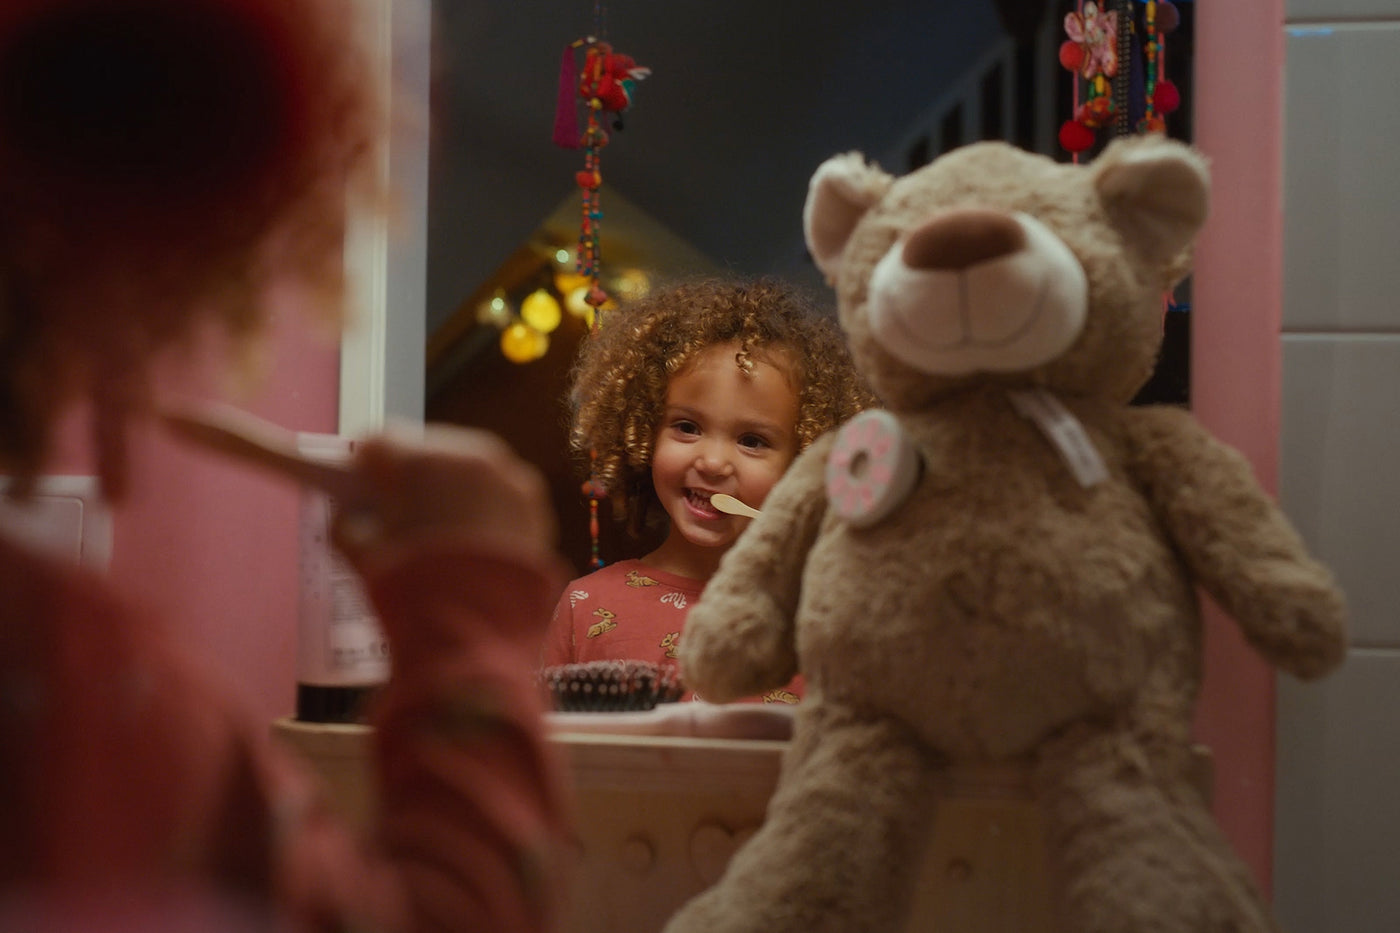 Alecto Baby HeeHee + ours en peluche - le bouton de conversation qui transforme votre peluche en ami interactif